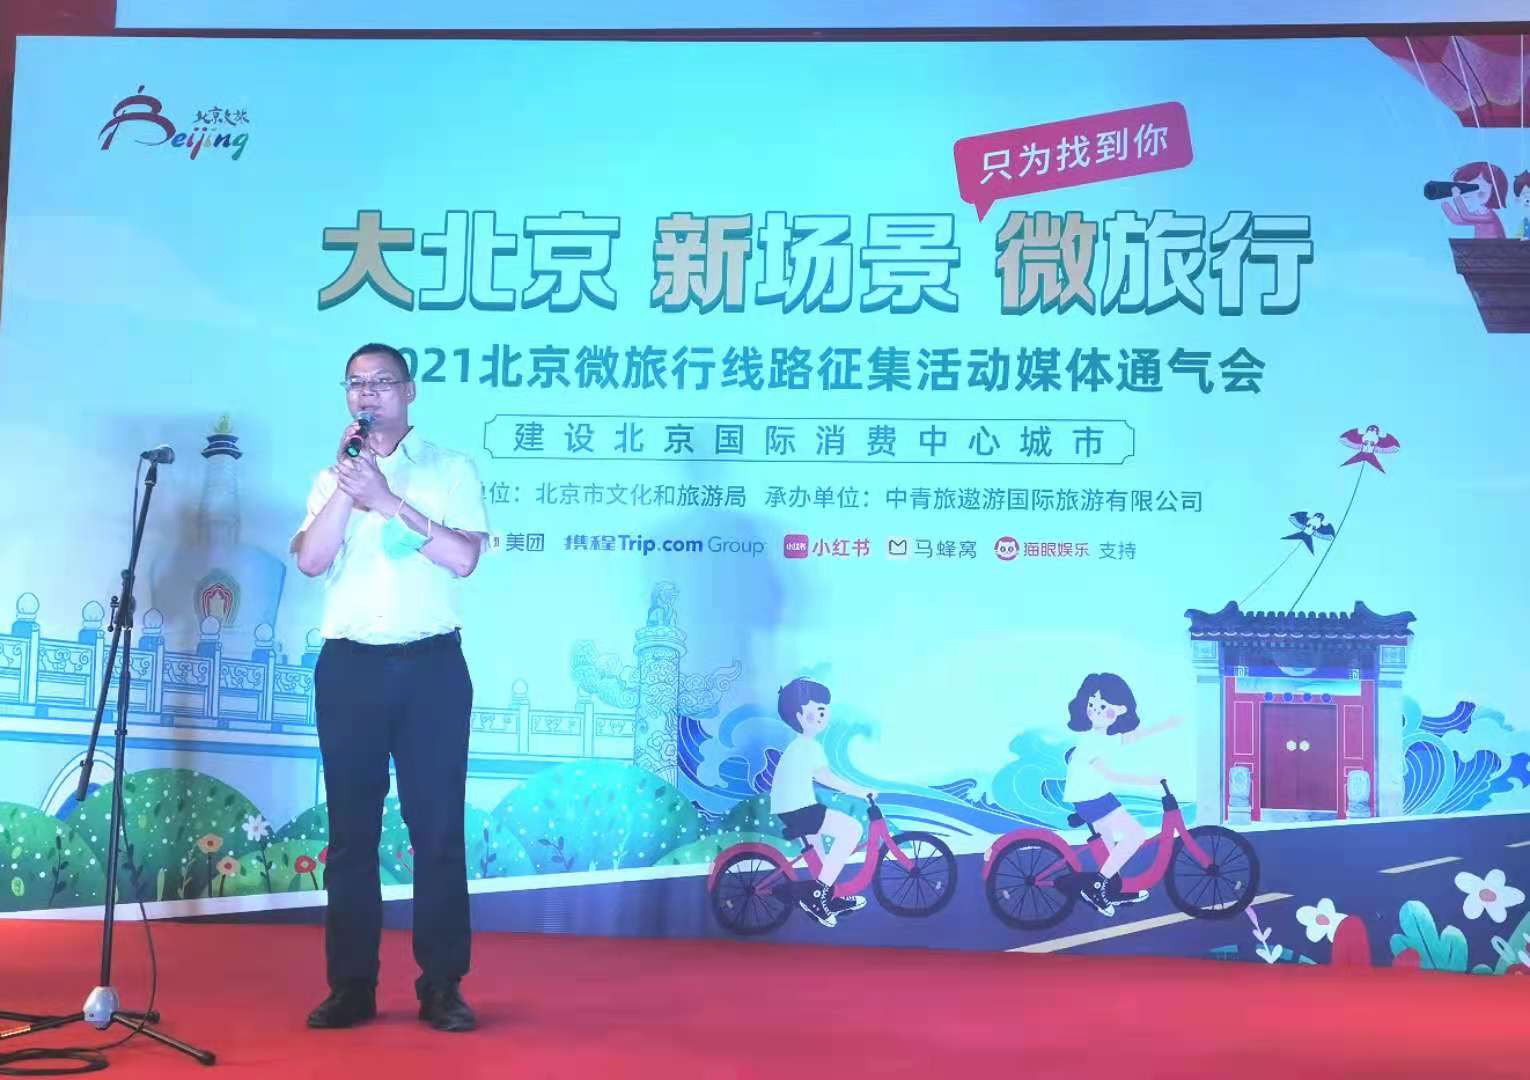 助力北京國際消費中心城市建設 北京「微旅行」線路徵集活動8月25日啟動